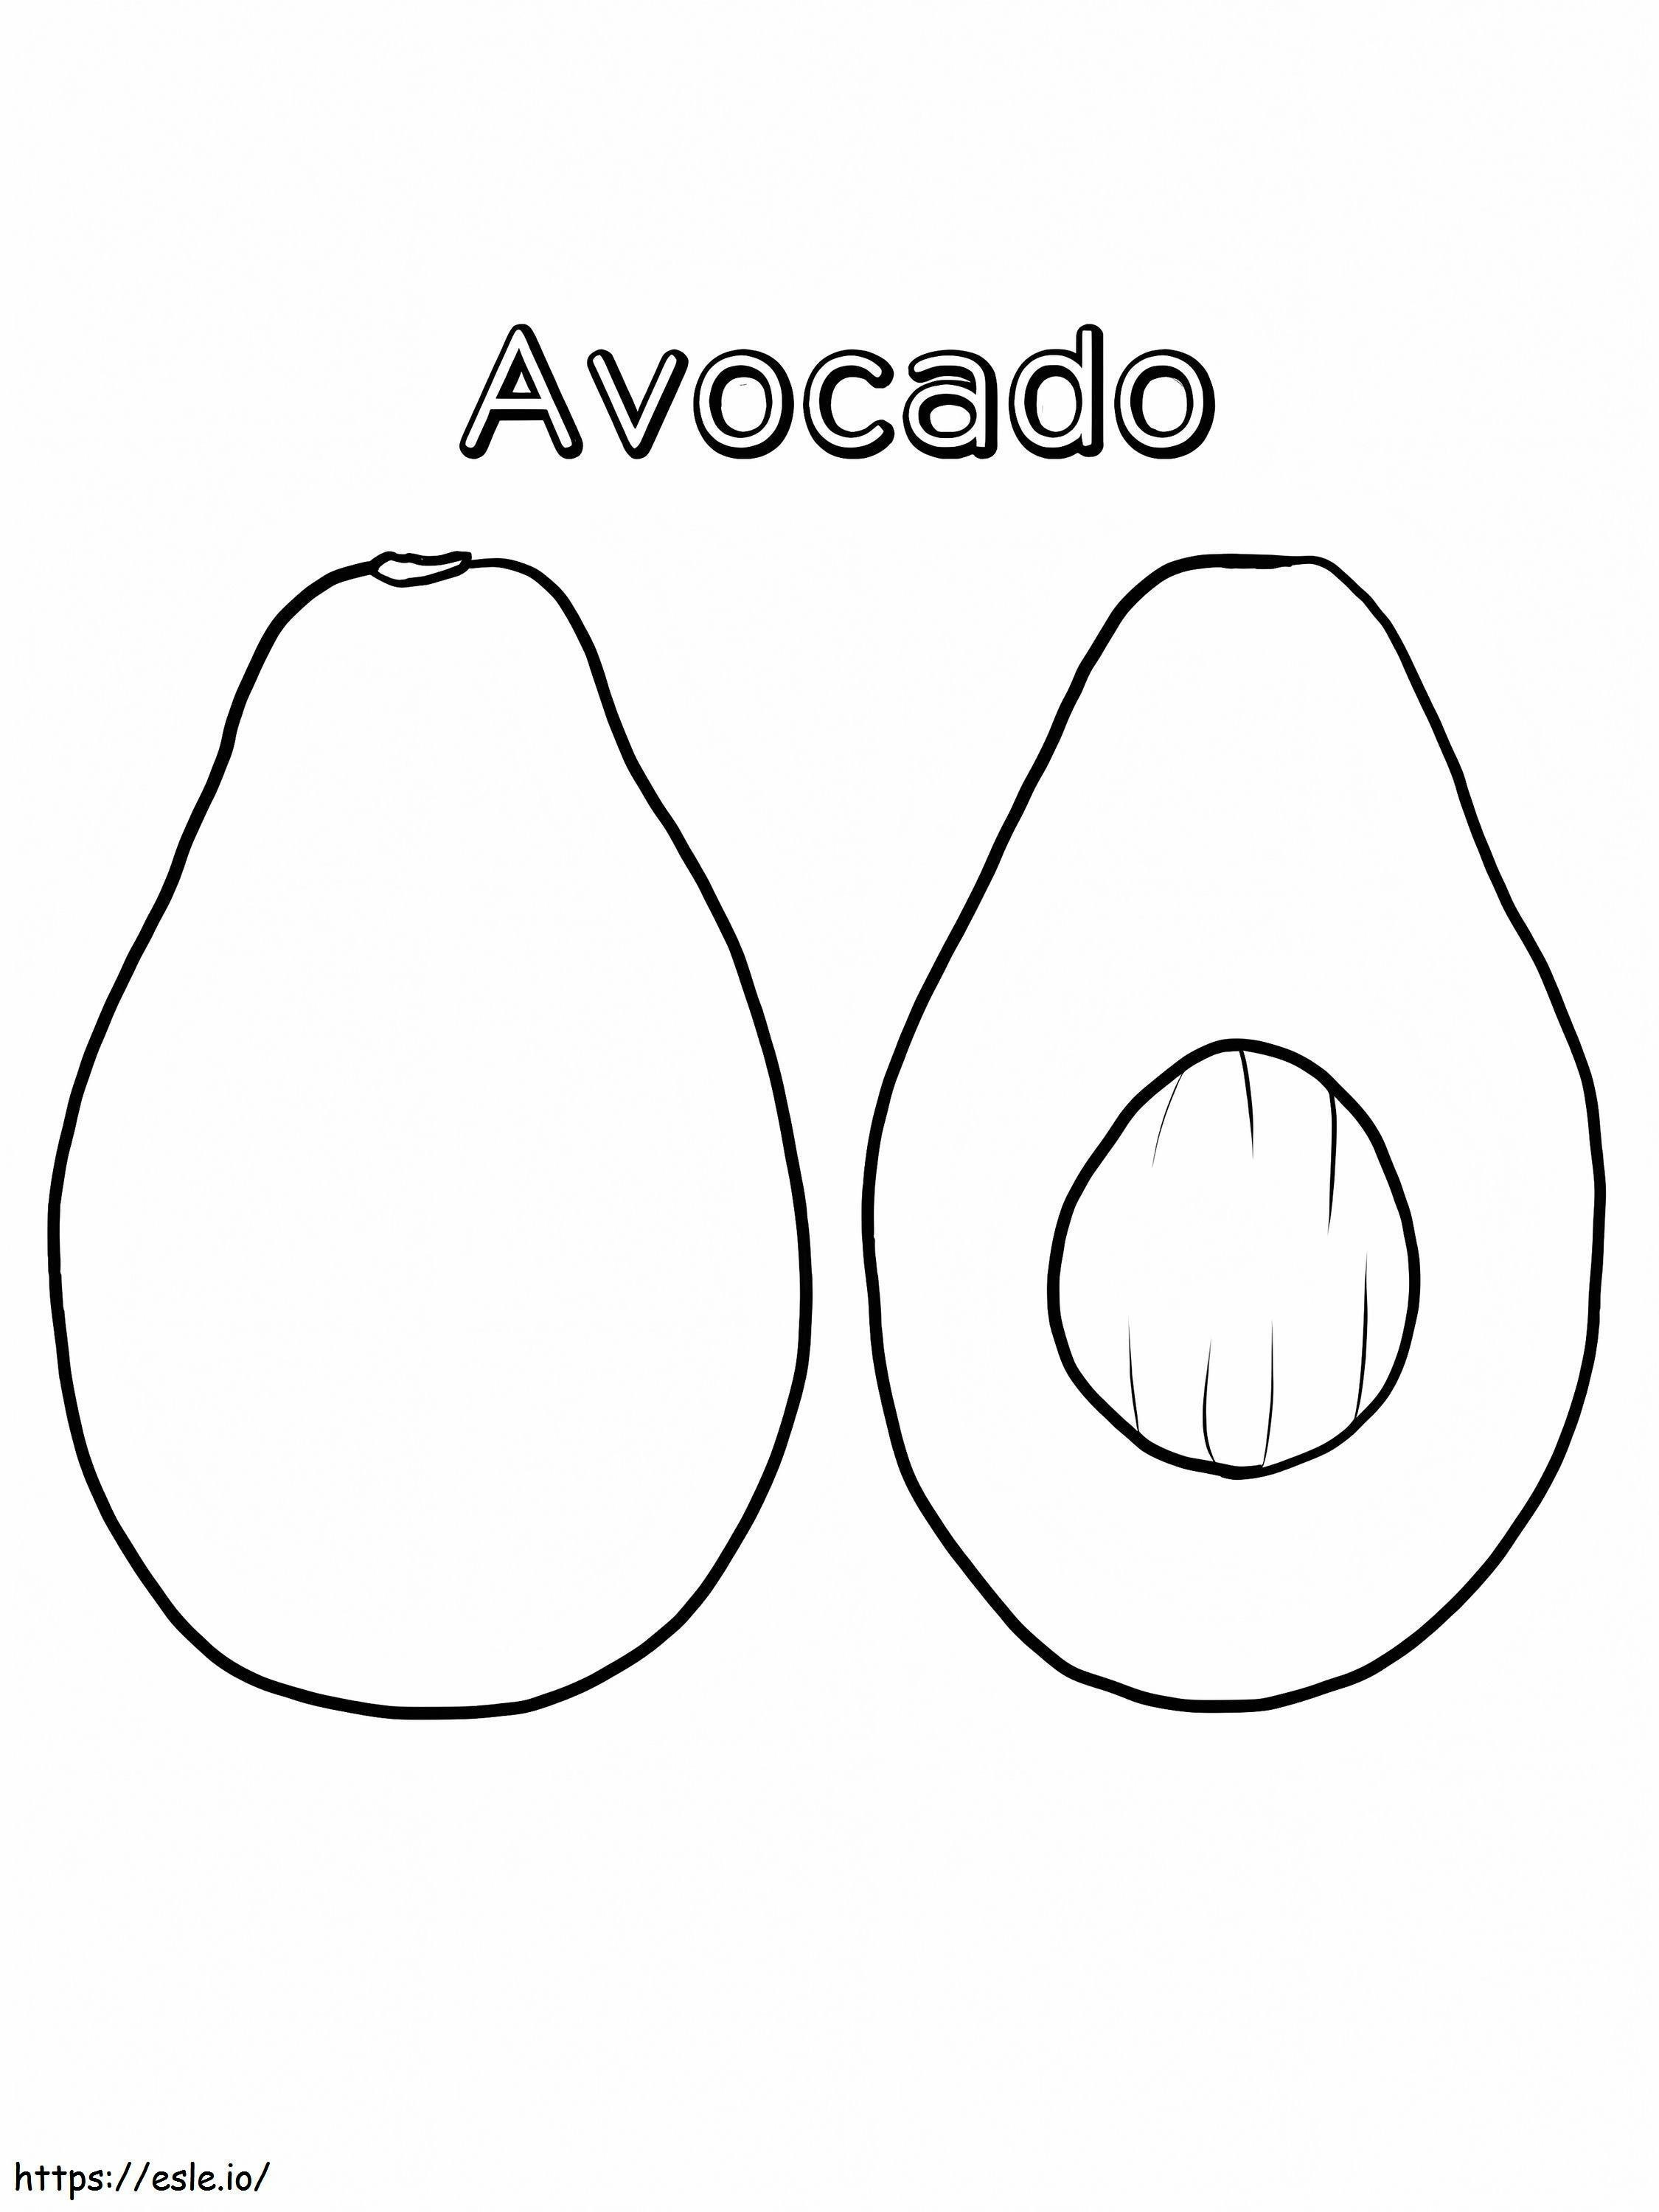 Avocado And Half 1 coloring page